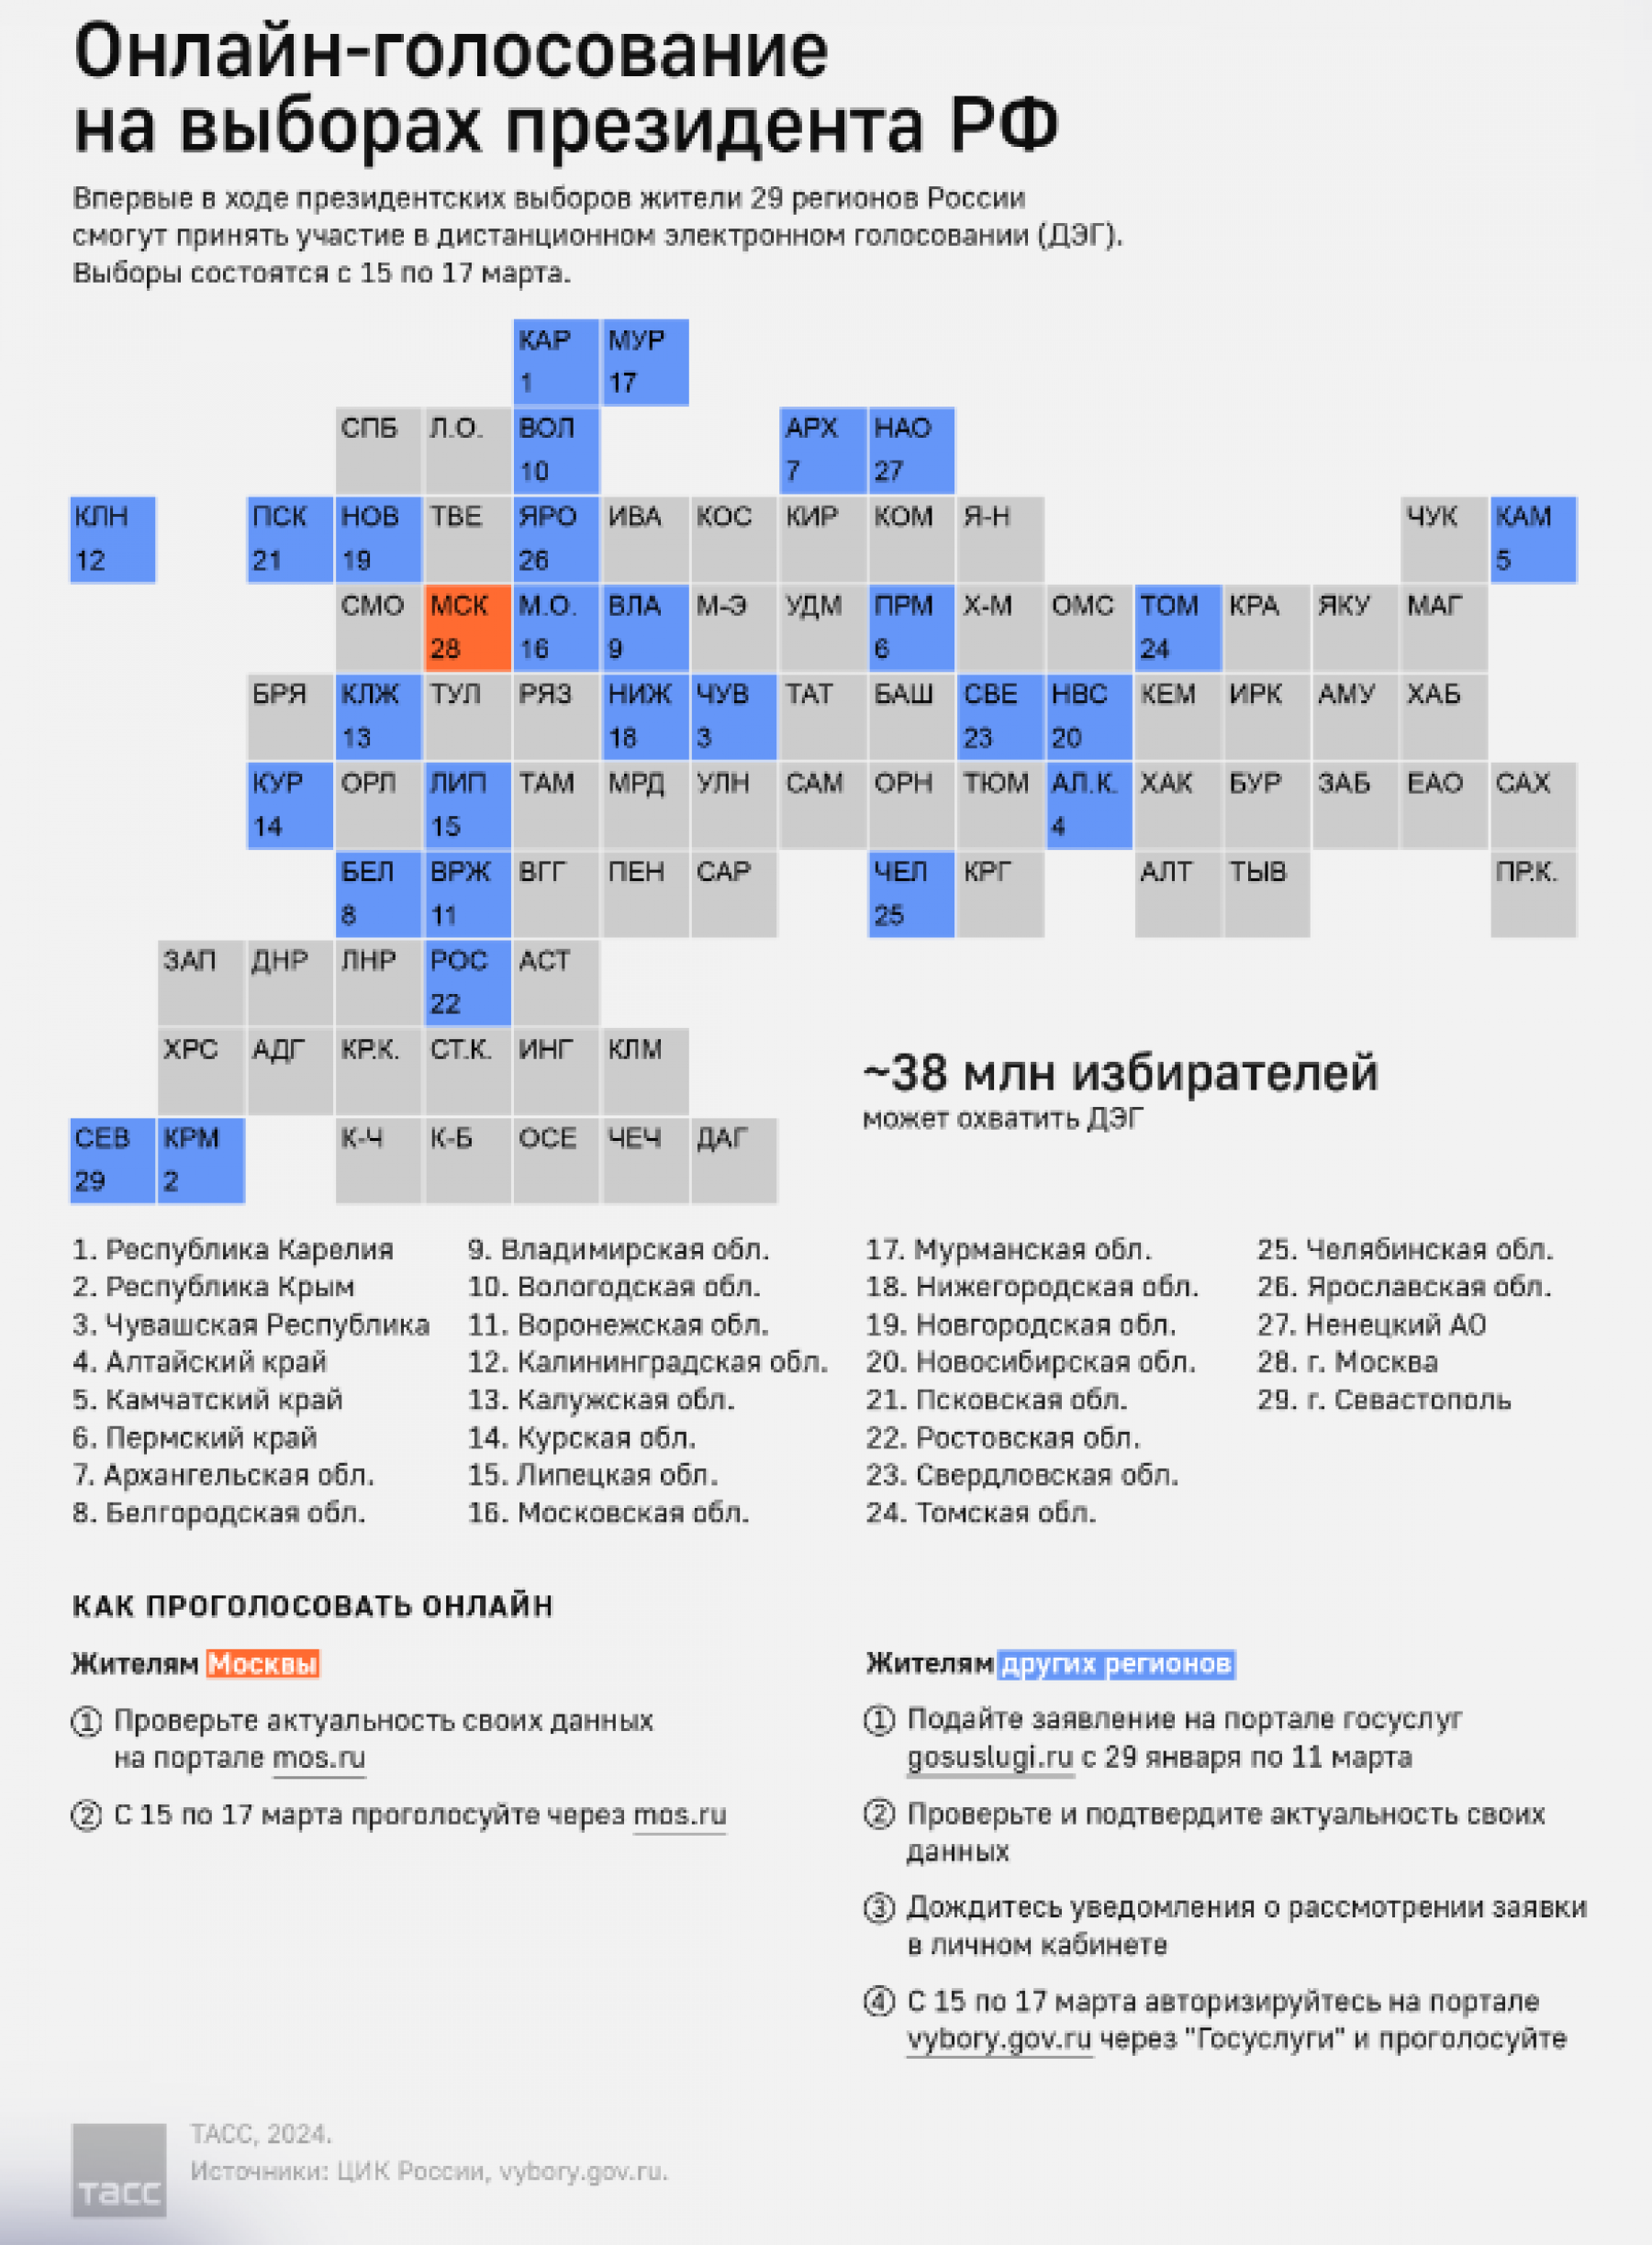 Список регионов с доступом к дистанционному голосованию на выборах президента РФ в 2024 году